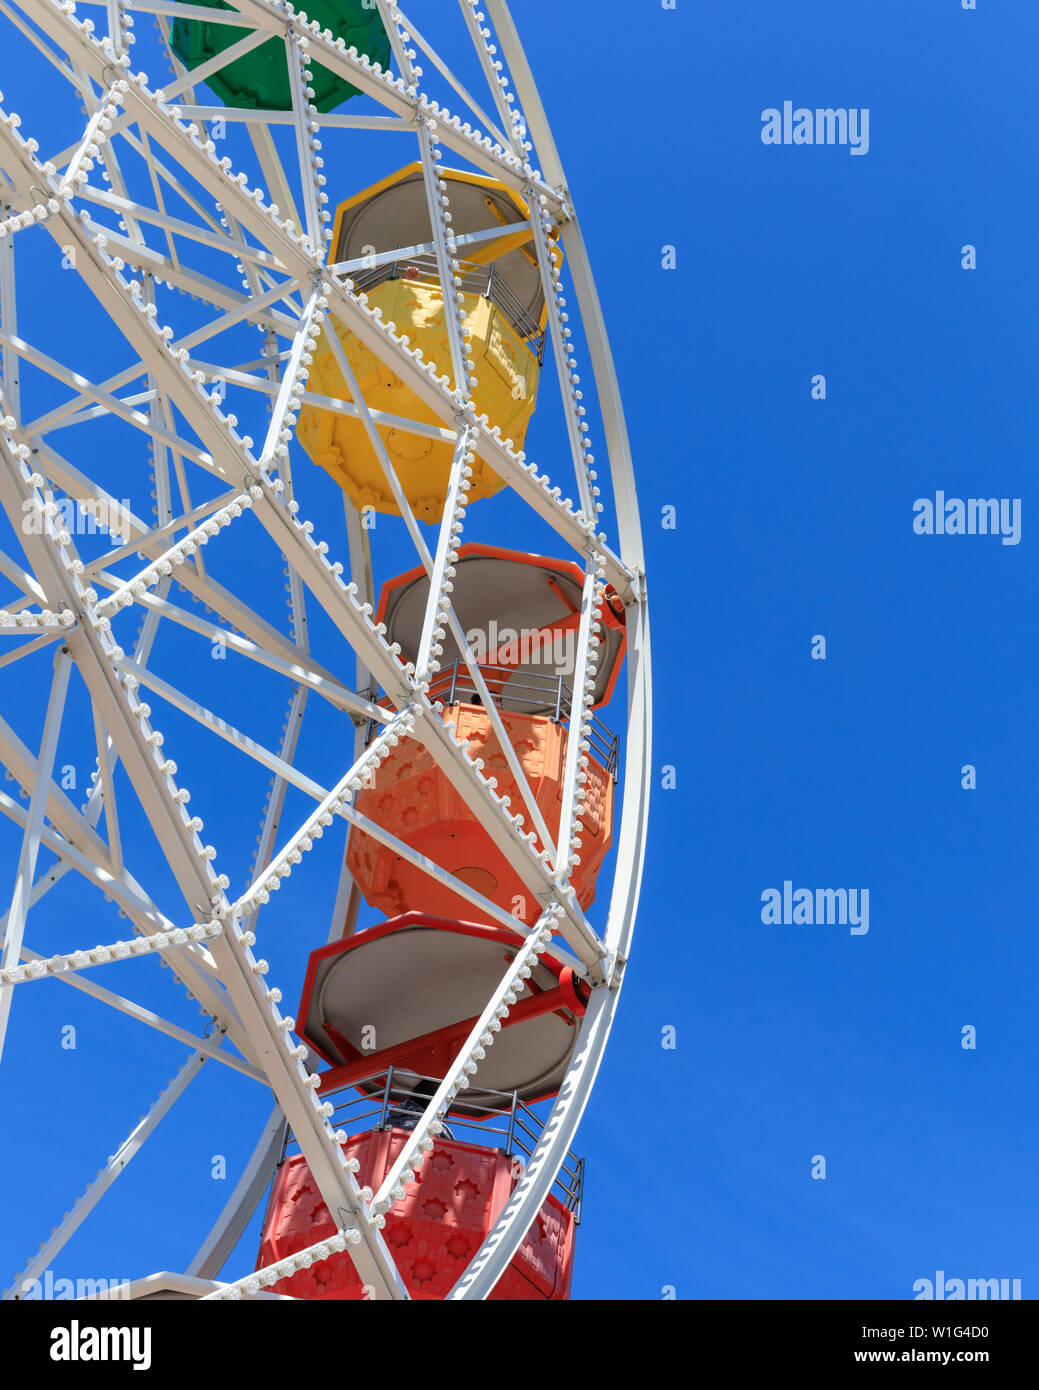 Foire colorée à l'ancienne fête foraine grande roue, manège dans un parc d'attractions, detail shot of structure, Tibidao, Barcelone, l'Europe Banque D'Images